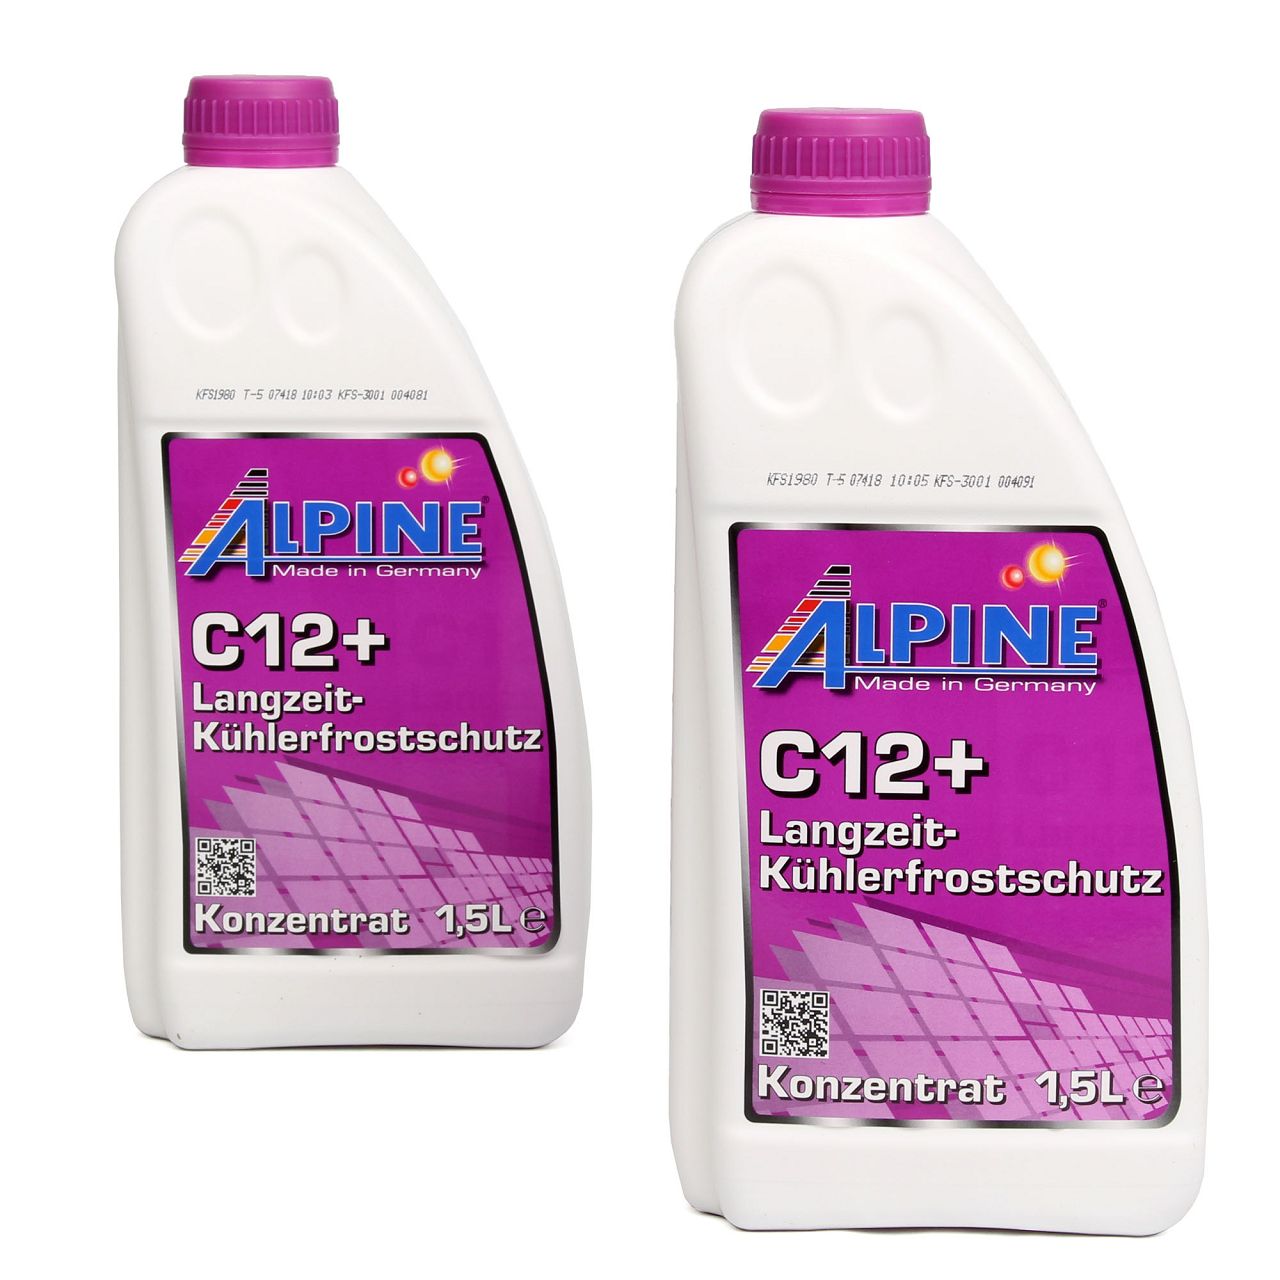 3L ALPINE Frostschutz LANGZEIT Kühlerfrostschutz Konzentrat C12+ G12+ VIOLETT